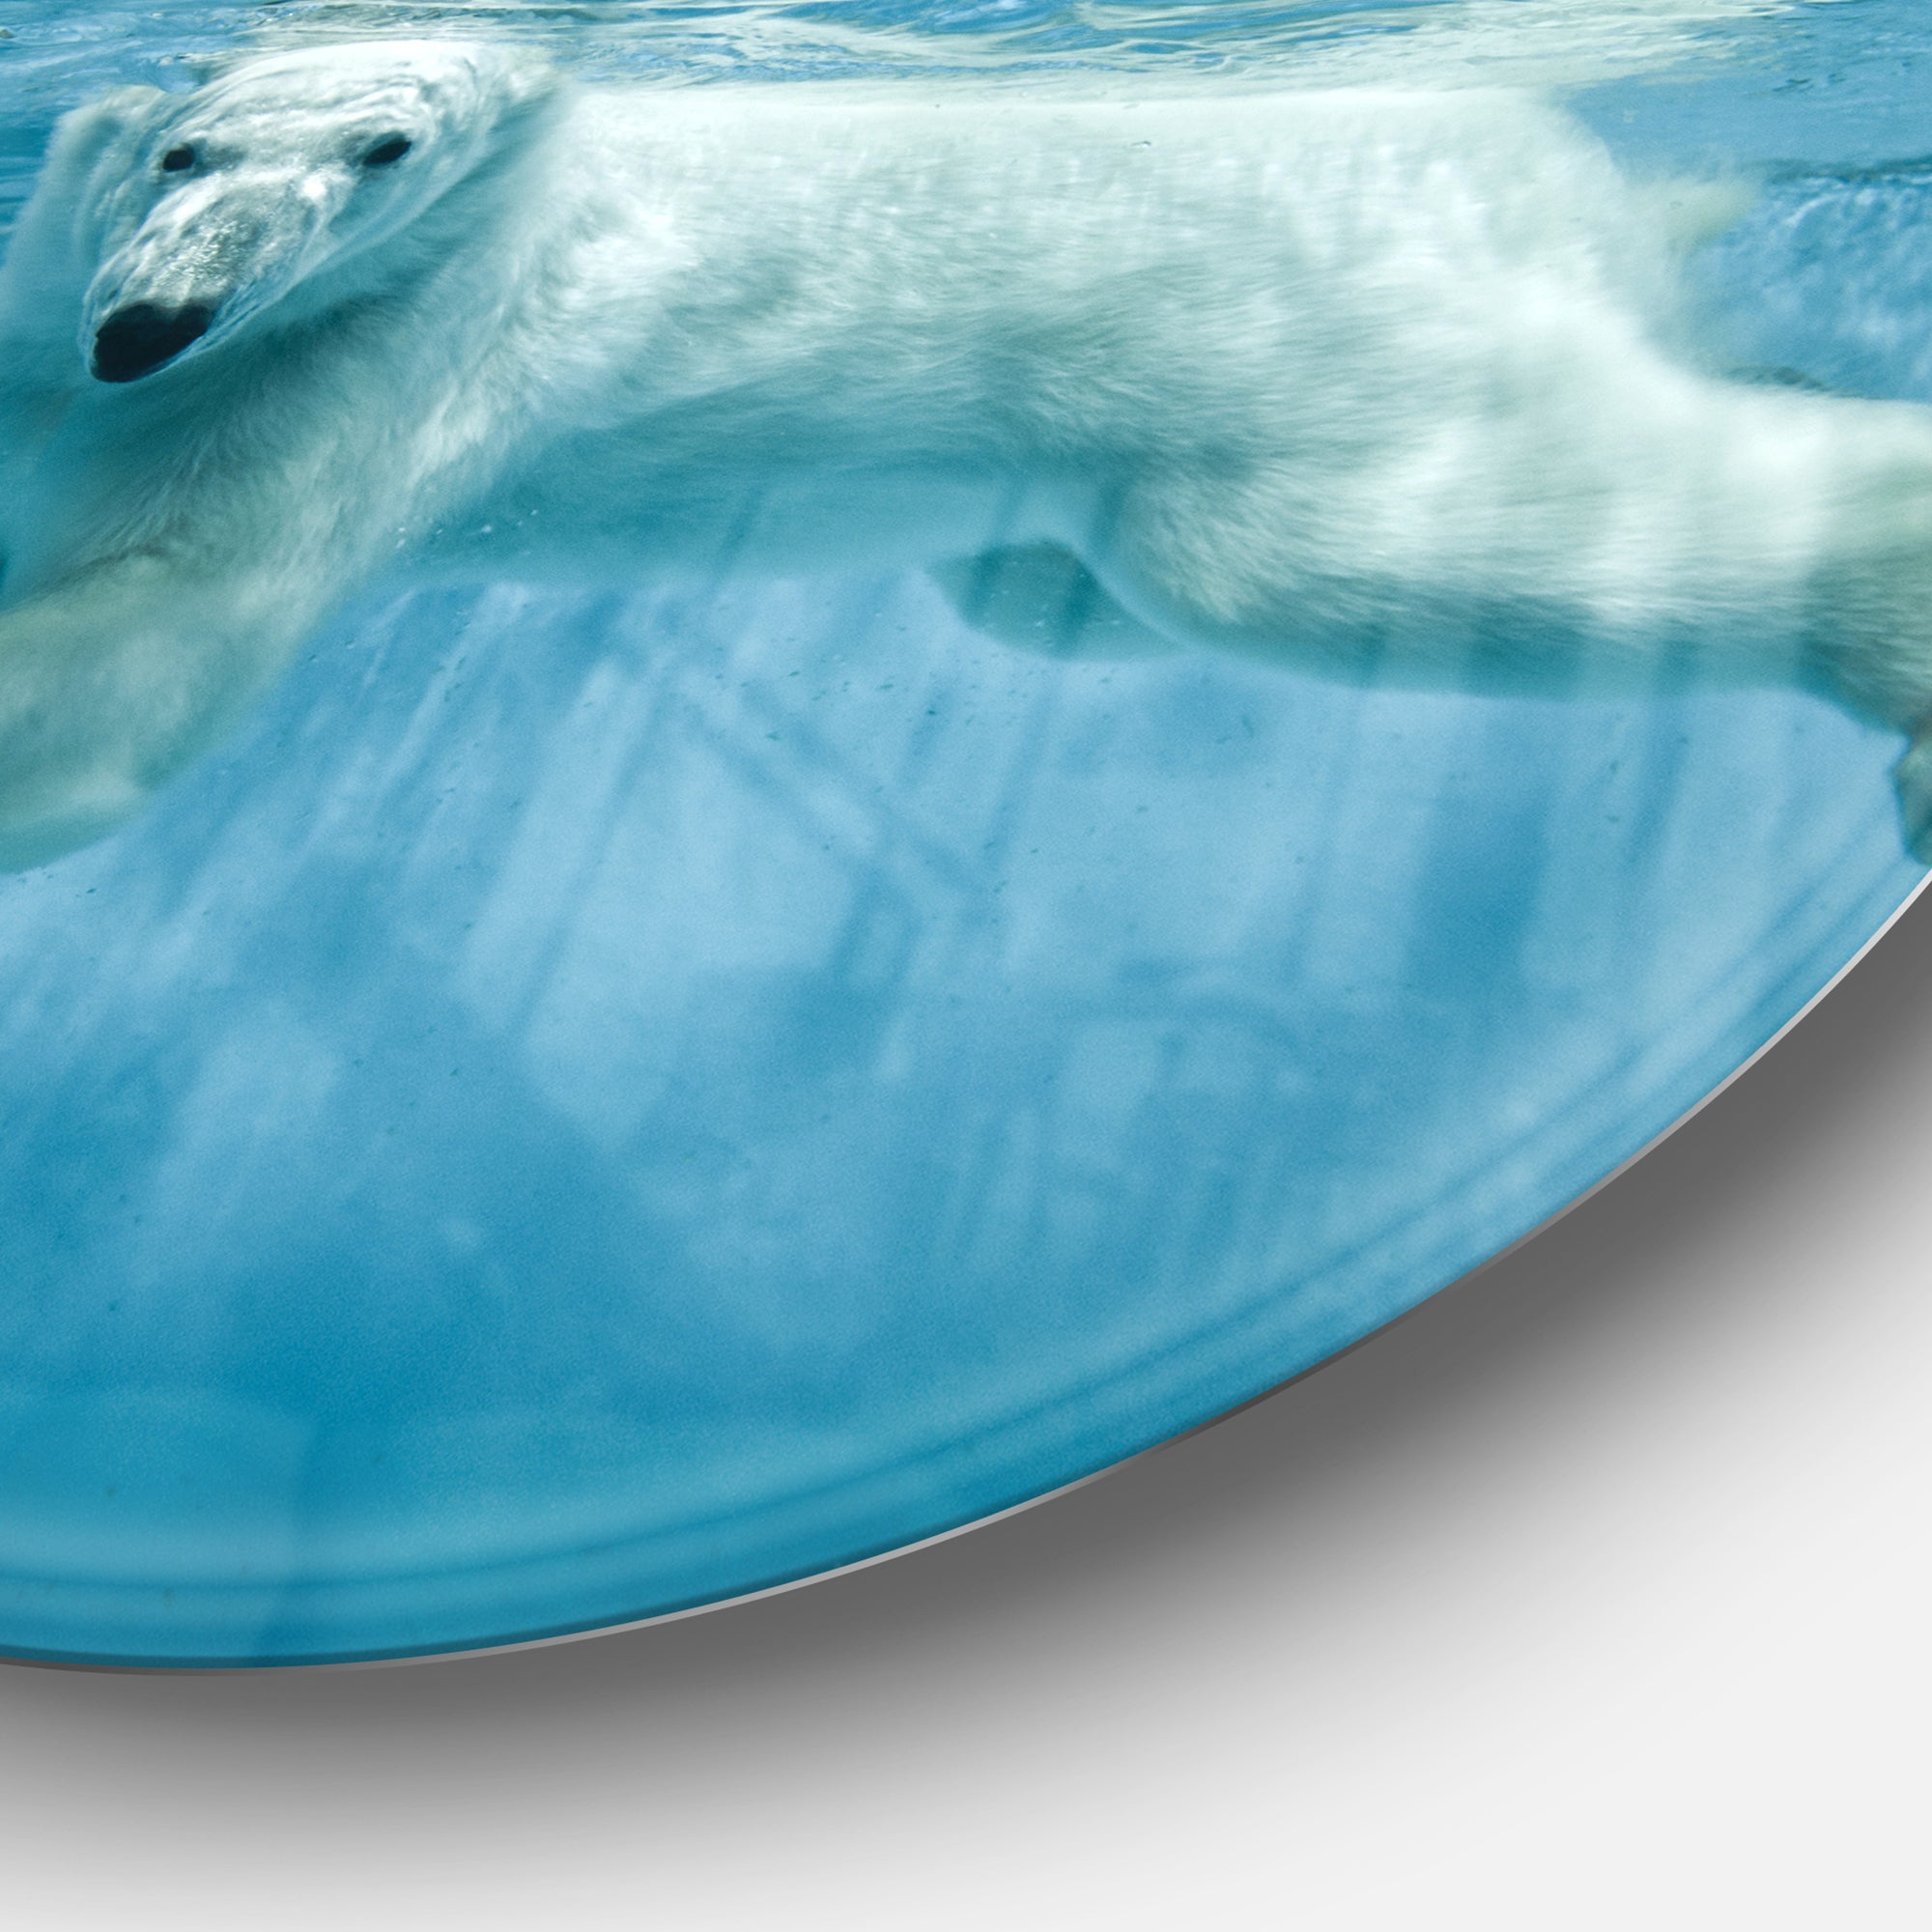 'Polar Bear Swimming under Water' Disc Large Animal Metal Artwork